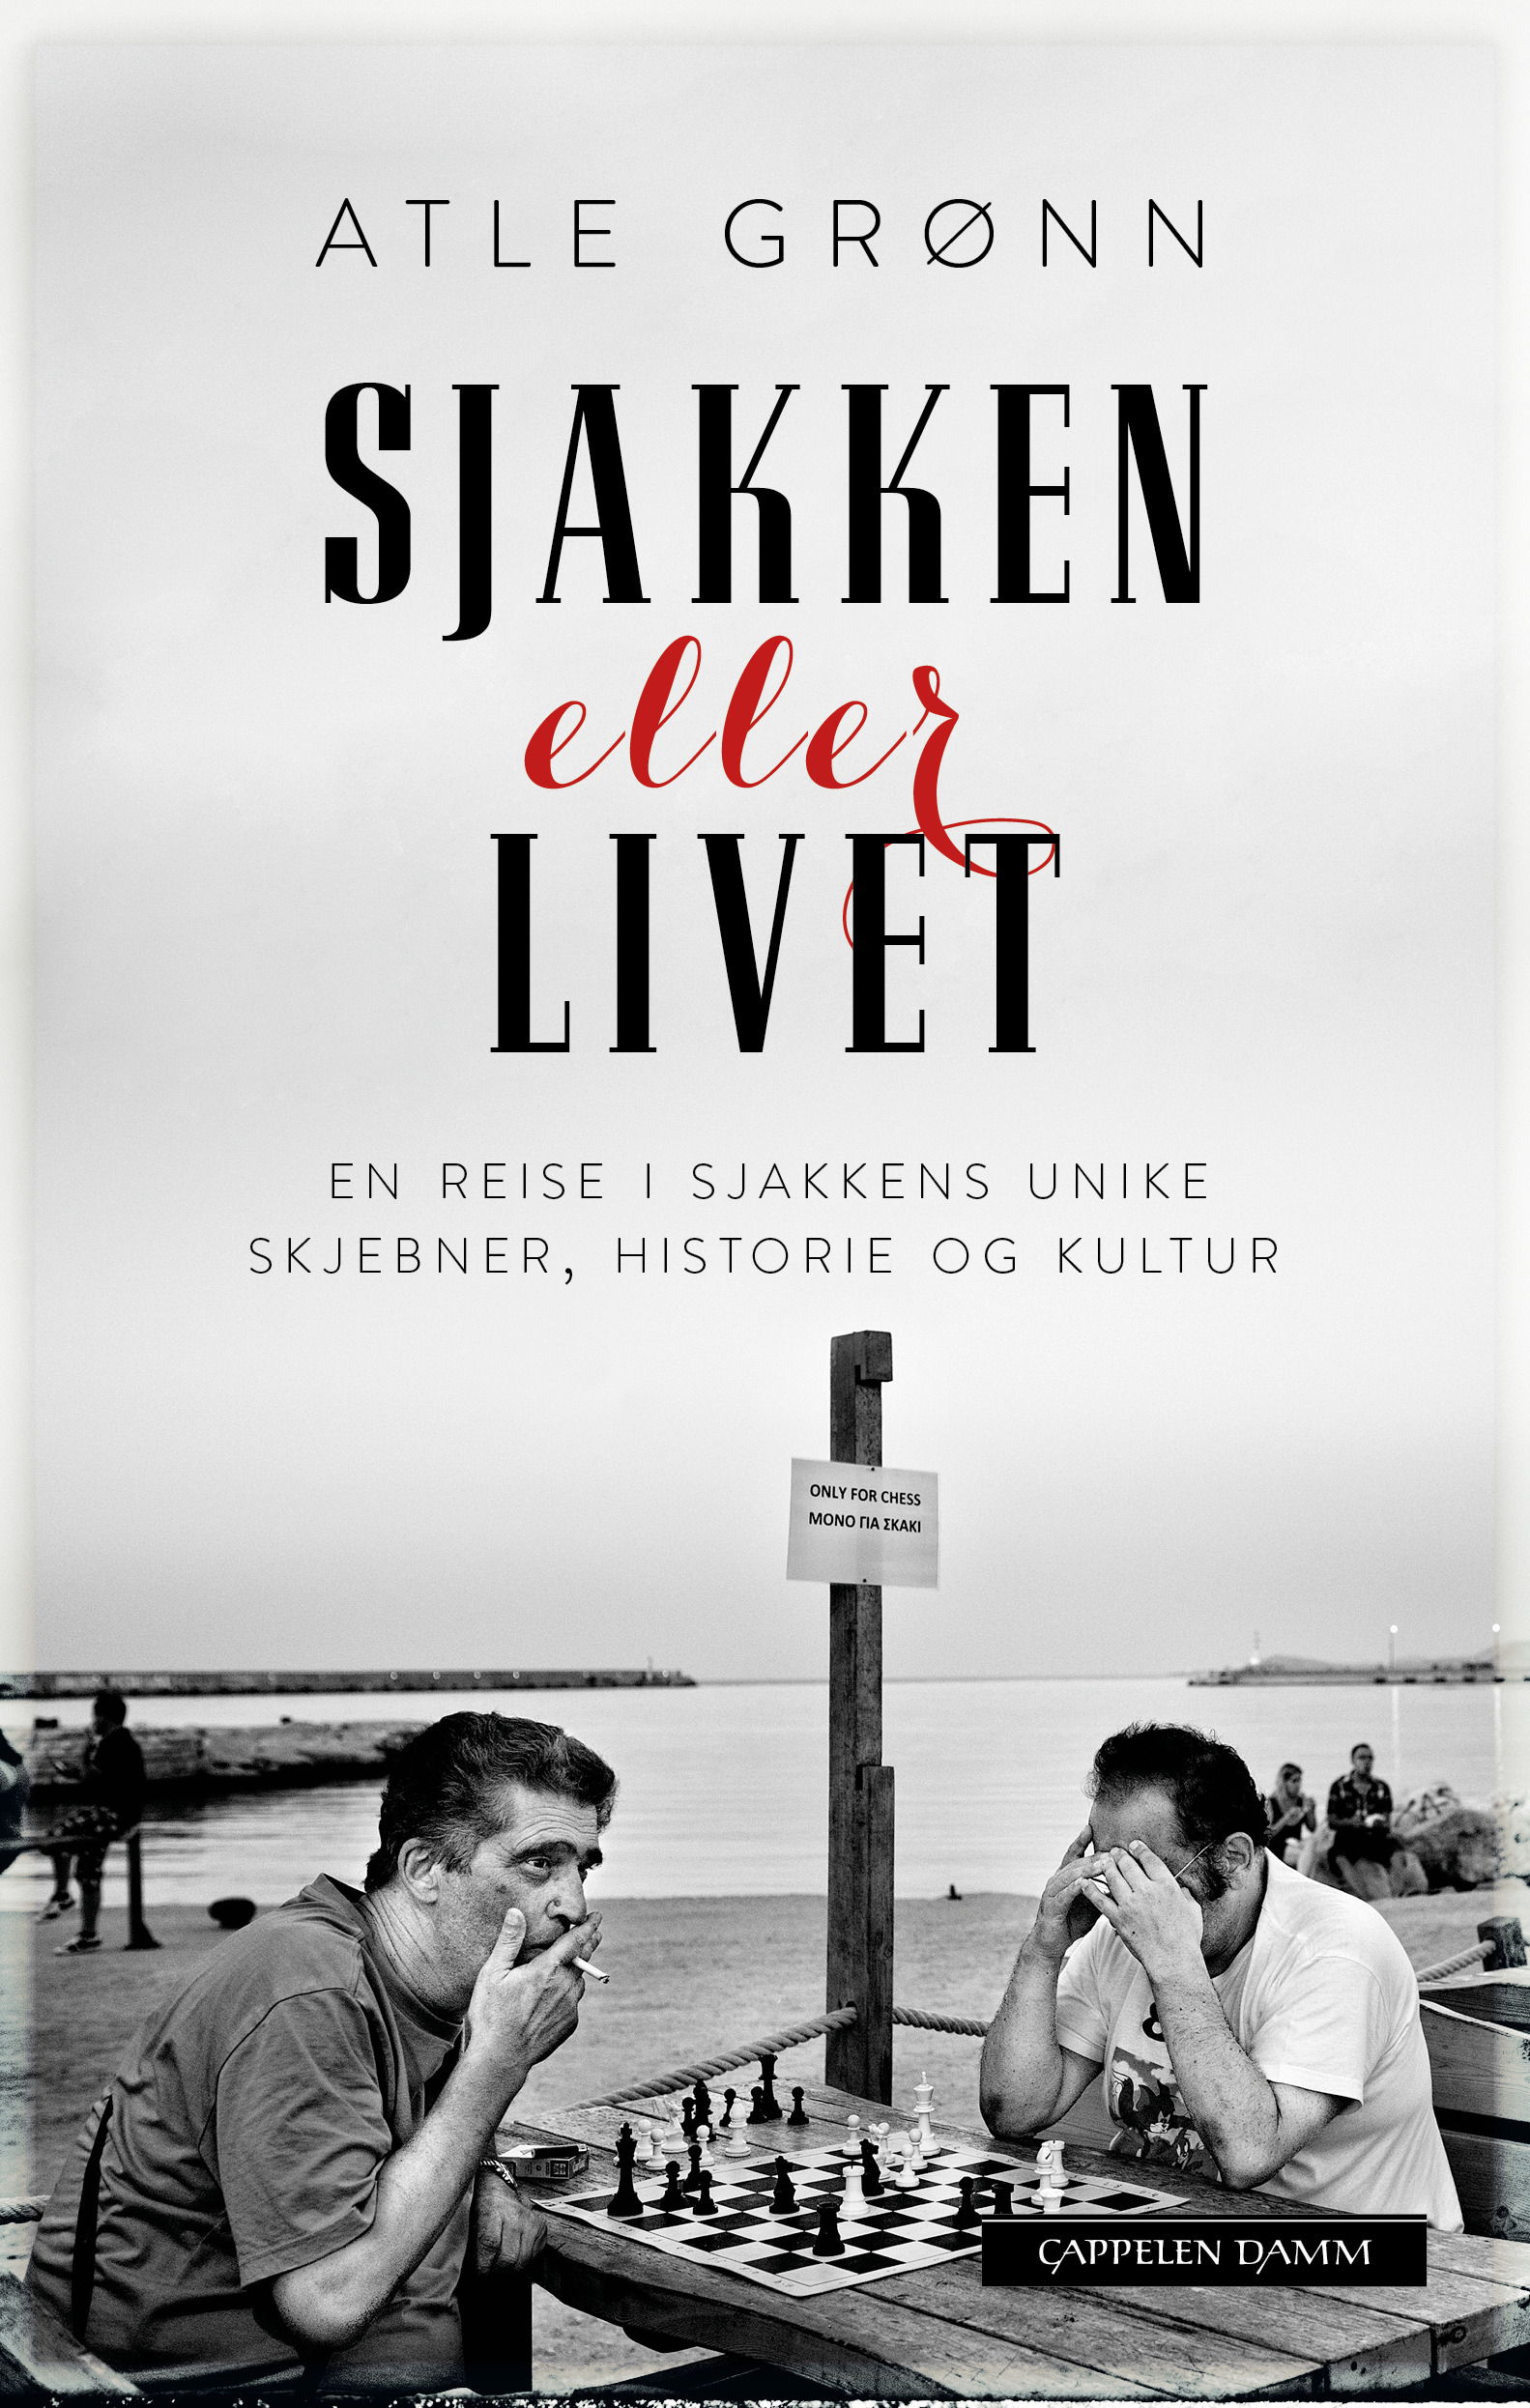 Atle Grønn er aktuell med boka Sjakken eller livet. Les mer og kjøp boka på cappelendamm.no.